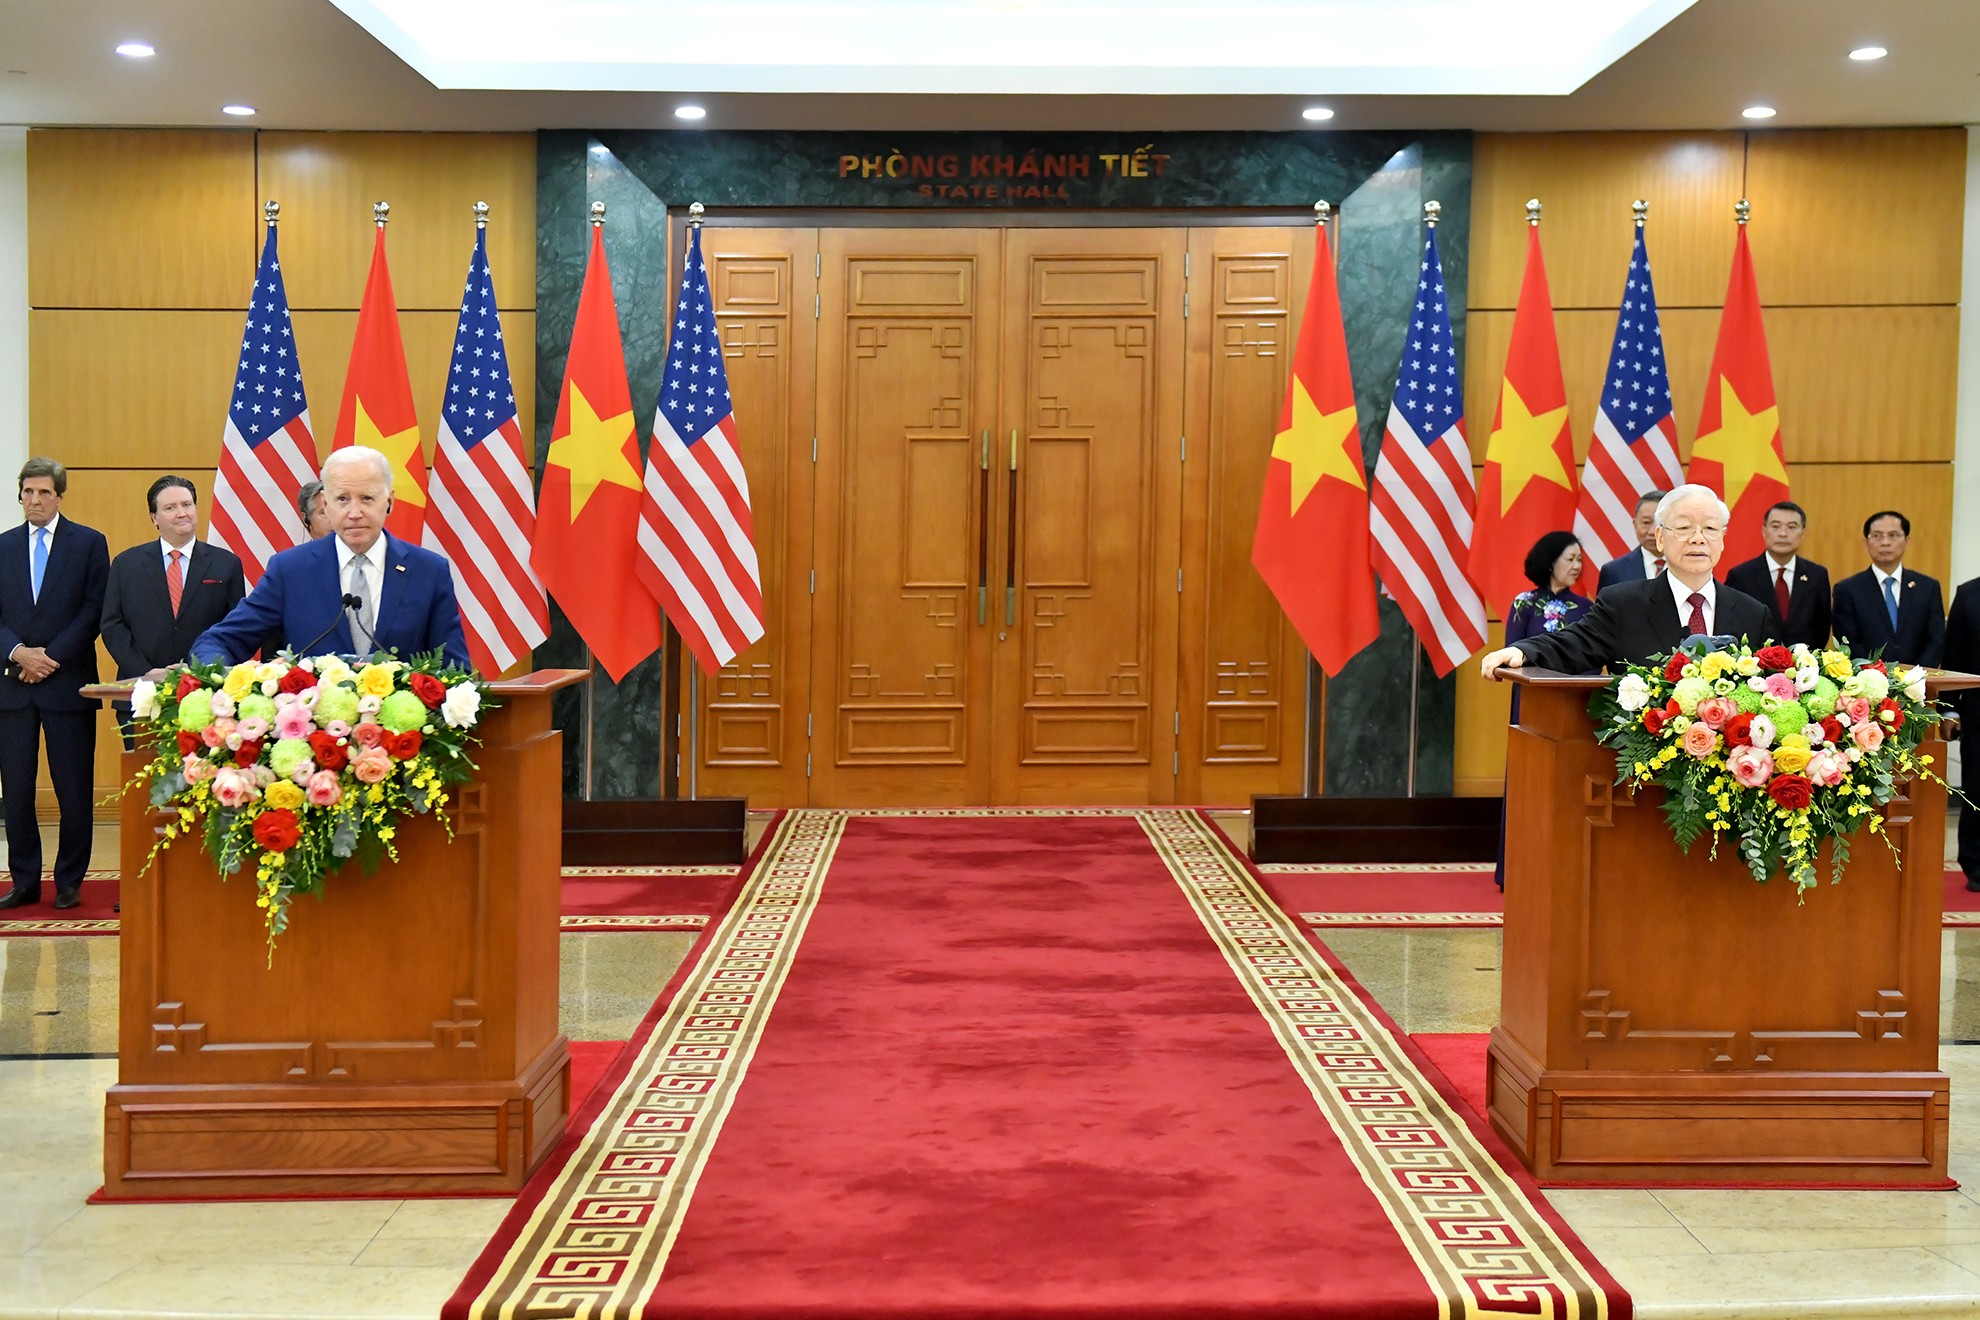 Phát biểu của Tổng thống Joe Biden với báo chí sau hội đàm với Tổng Bí thư Nguyễn Phú Trọng ảnh 1